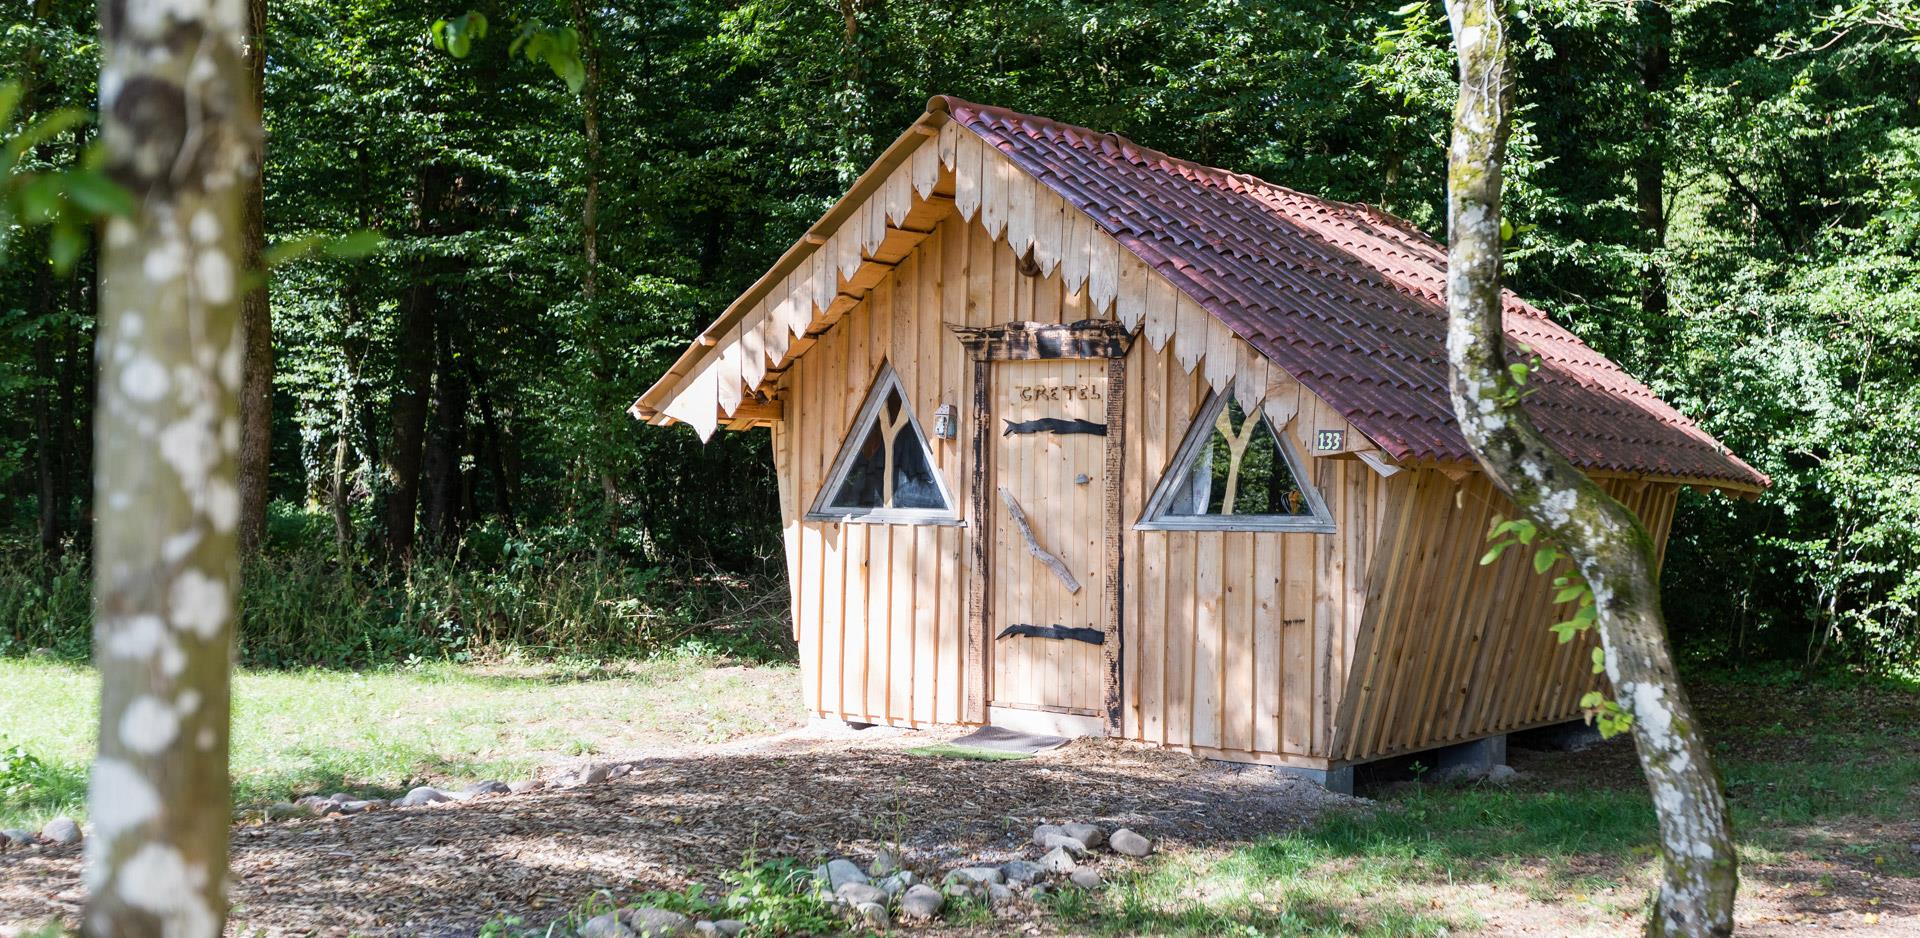 Vermietung von originellen Unterkünften in den Vogesen: Blick auf die originelle Hütte Gretel